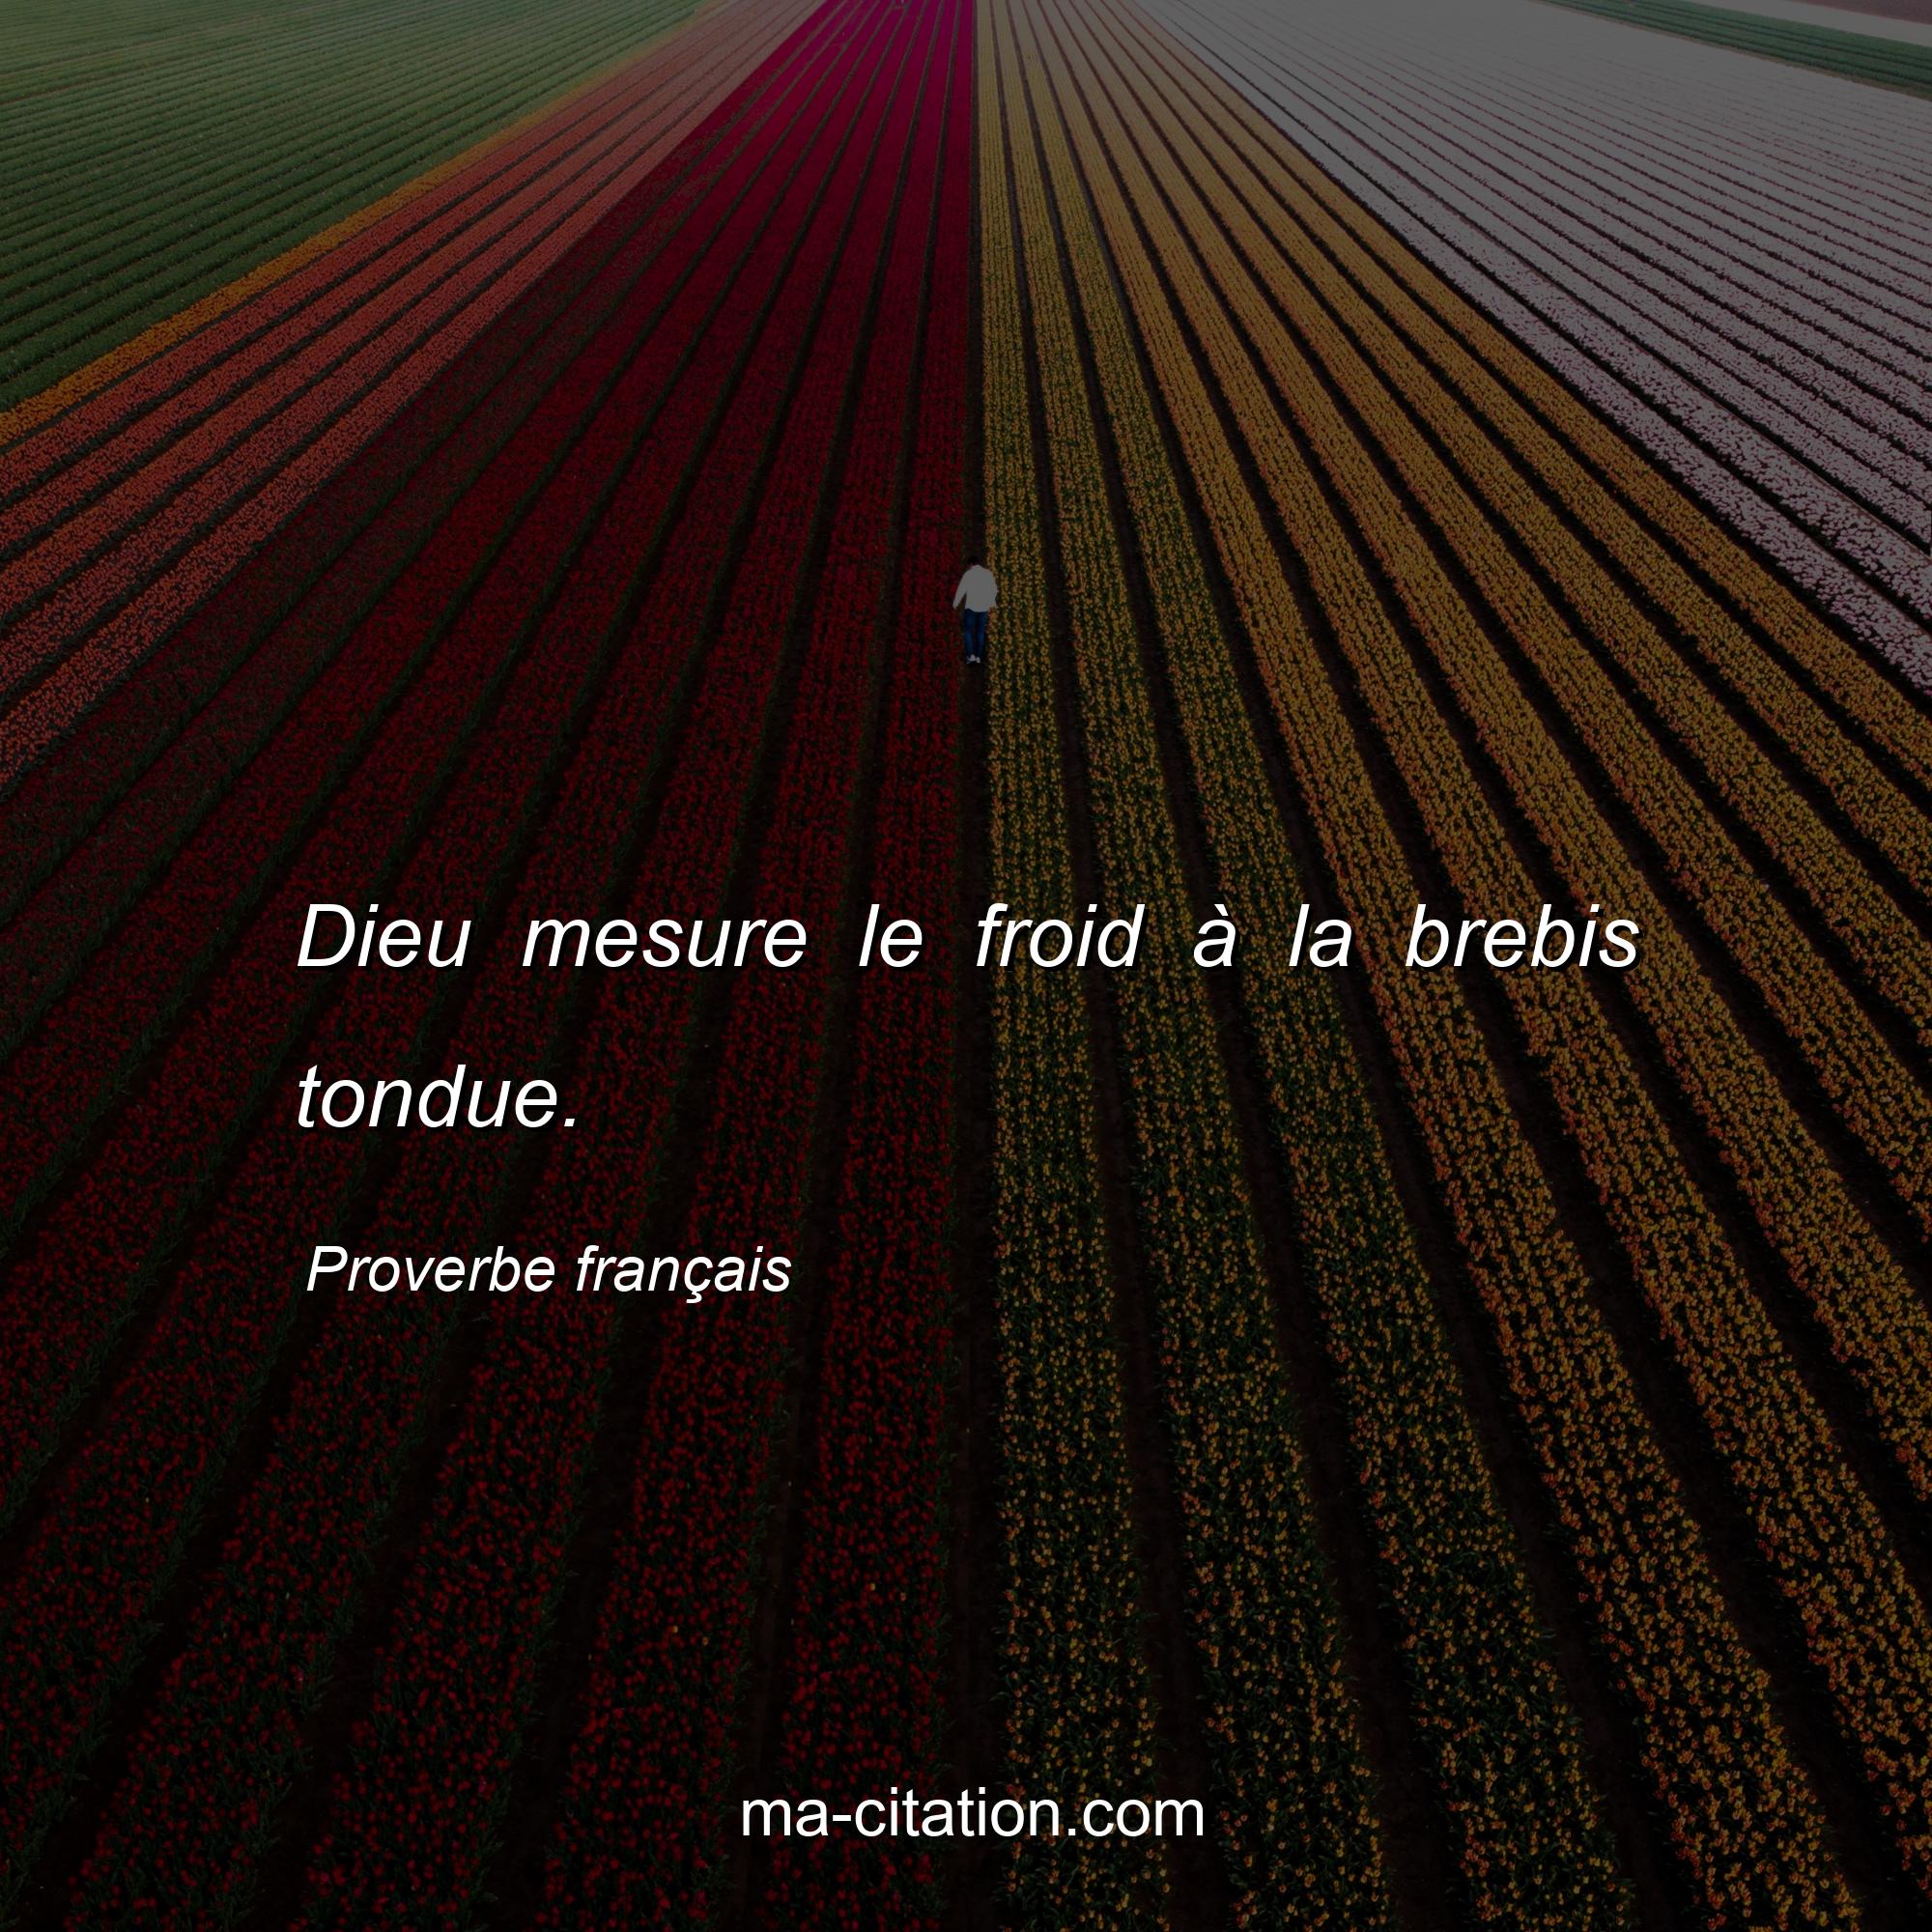 Proverbe français : Dieu mesure le froid à la brebis tondue.